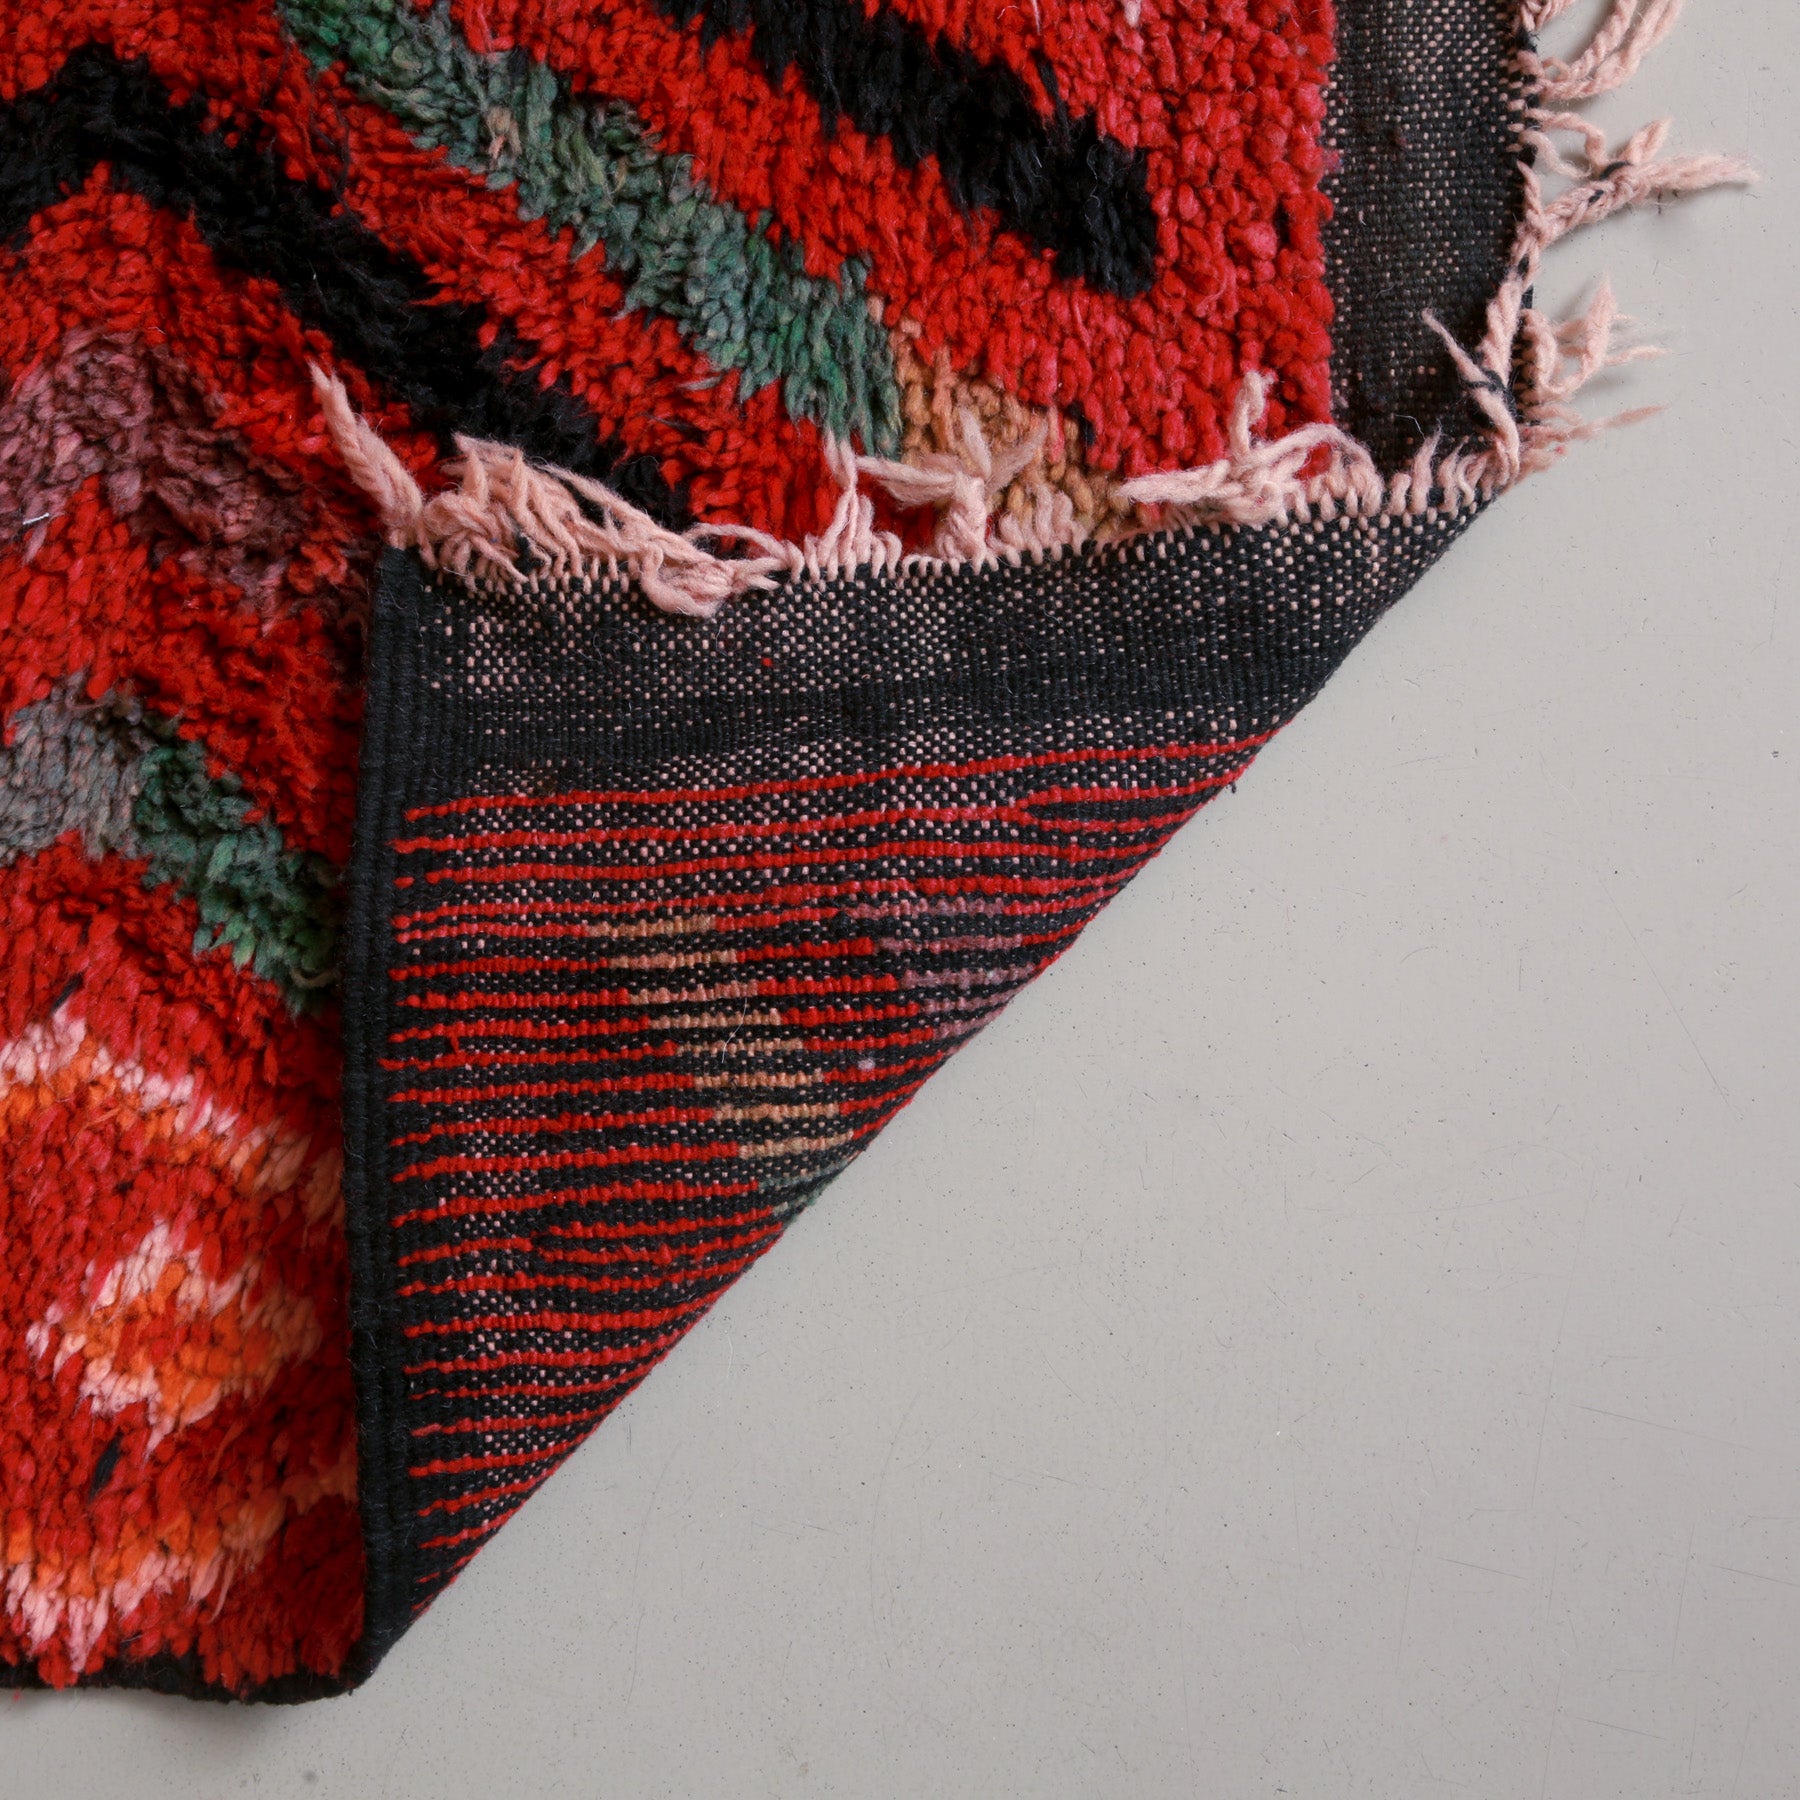 dettaglio del retro di un tappeto boujaad con nodi di lana rossa 